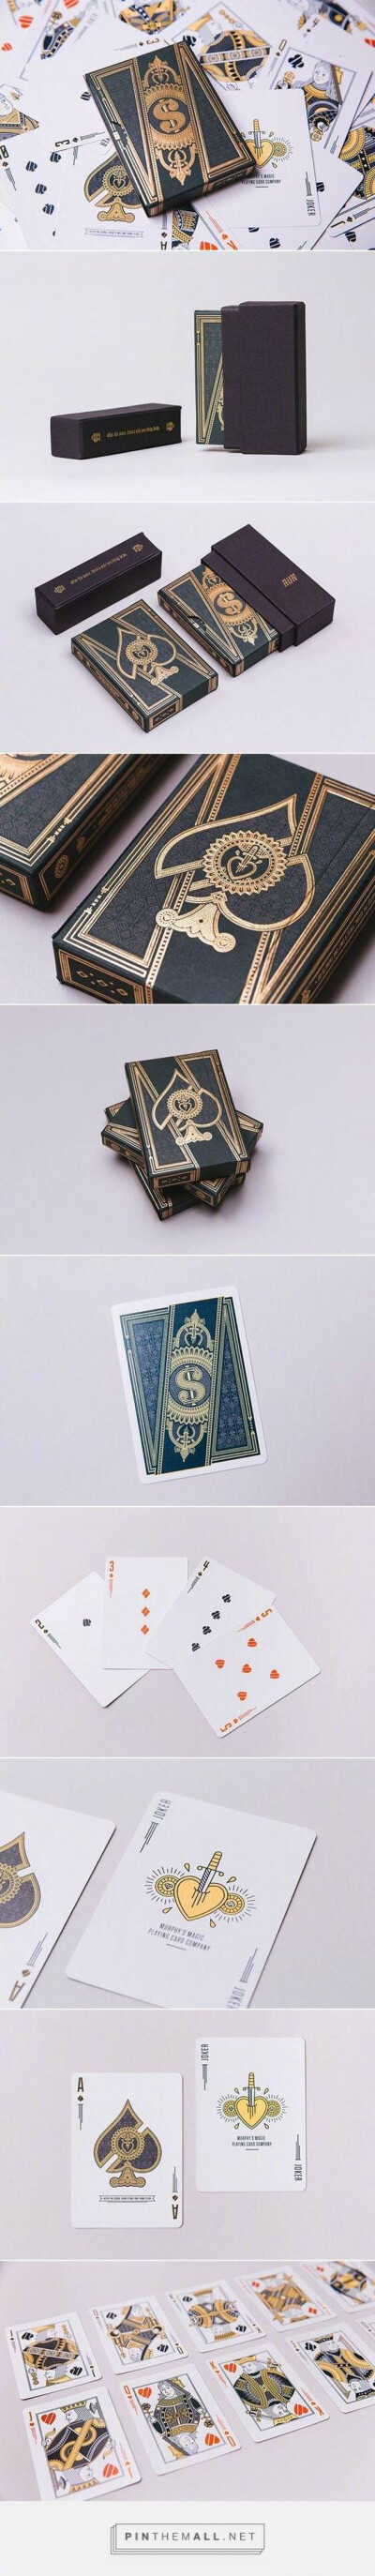 扑克牌包装设计